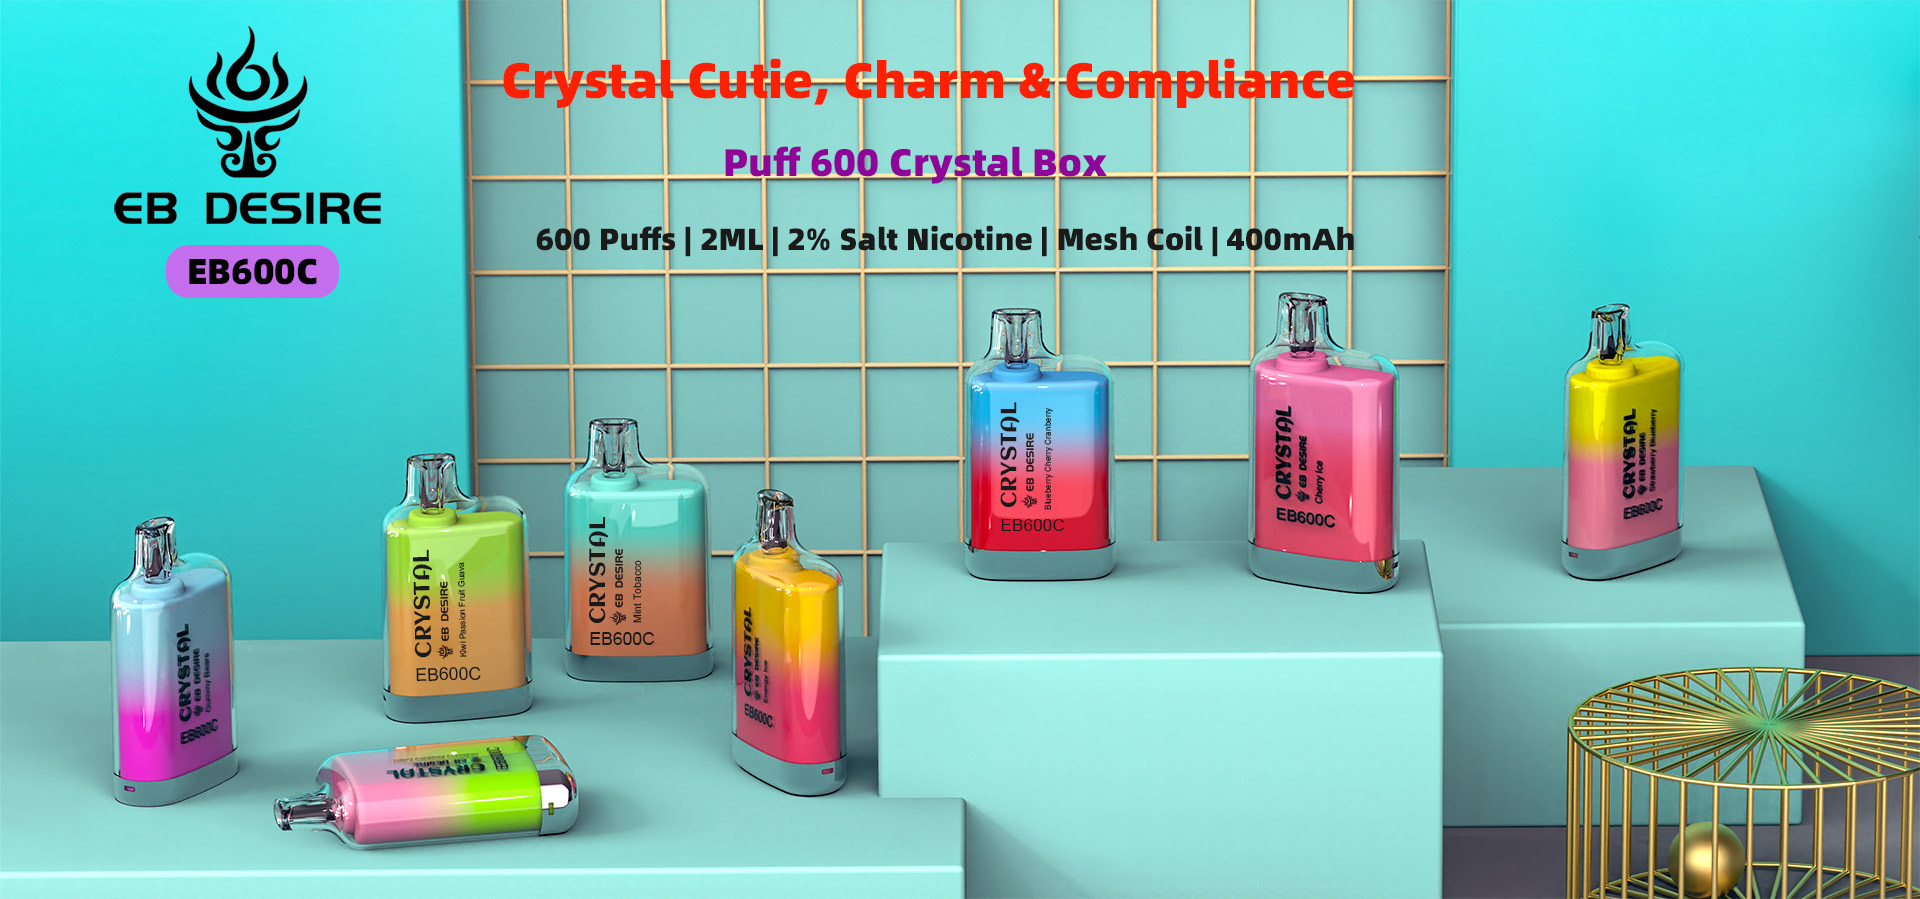 Eb Desire Puff 600 kristalna kutija šarmantna jednokratna za jednokratnu upotrebu (4)